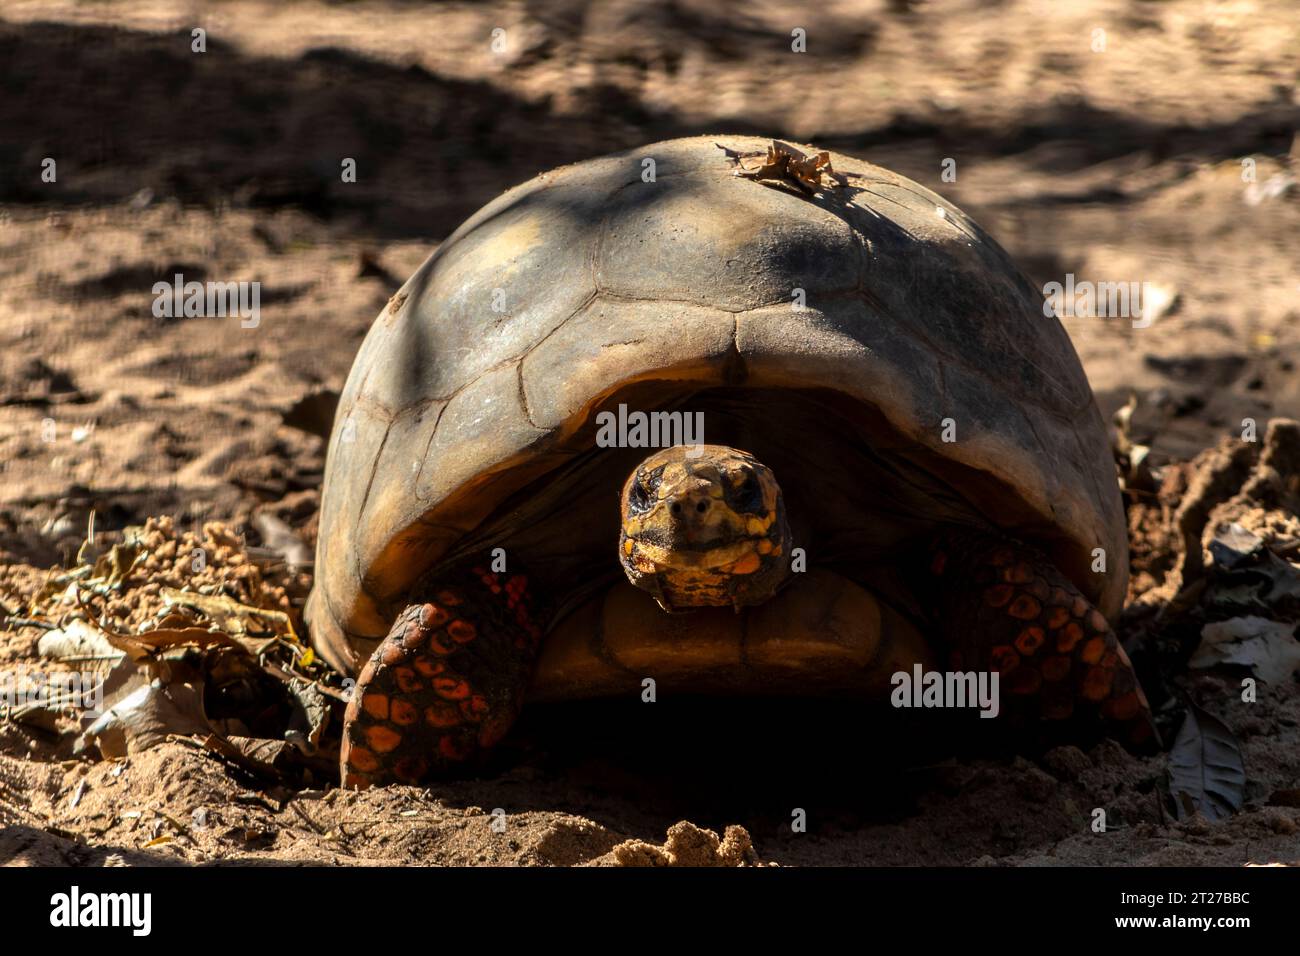 Jabuti (Chelonoidis carbonaria), tortue sud-américaine, de l'ordre des chéloniens, de la famille des testudinidae. Au Brésil Banque D'Images